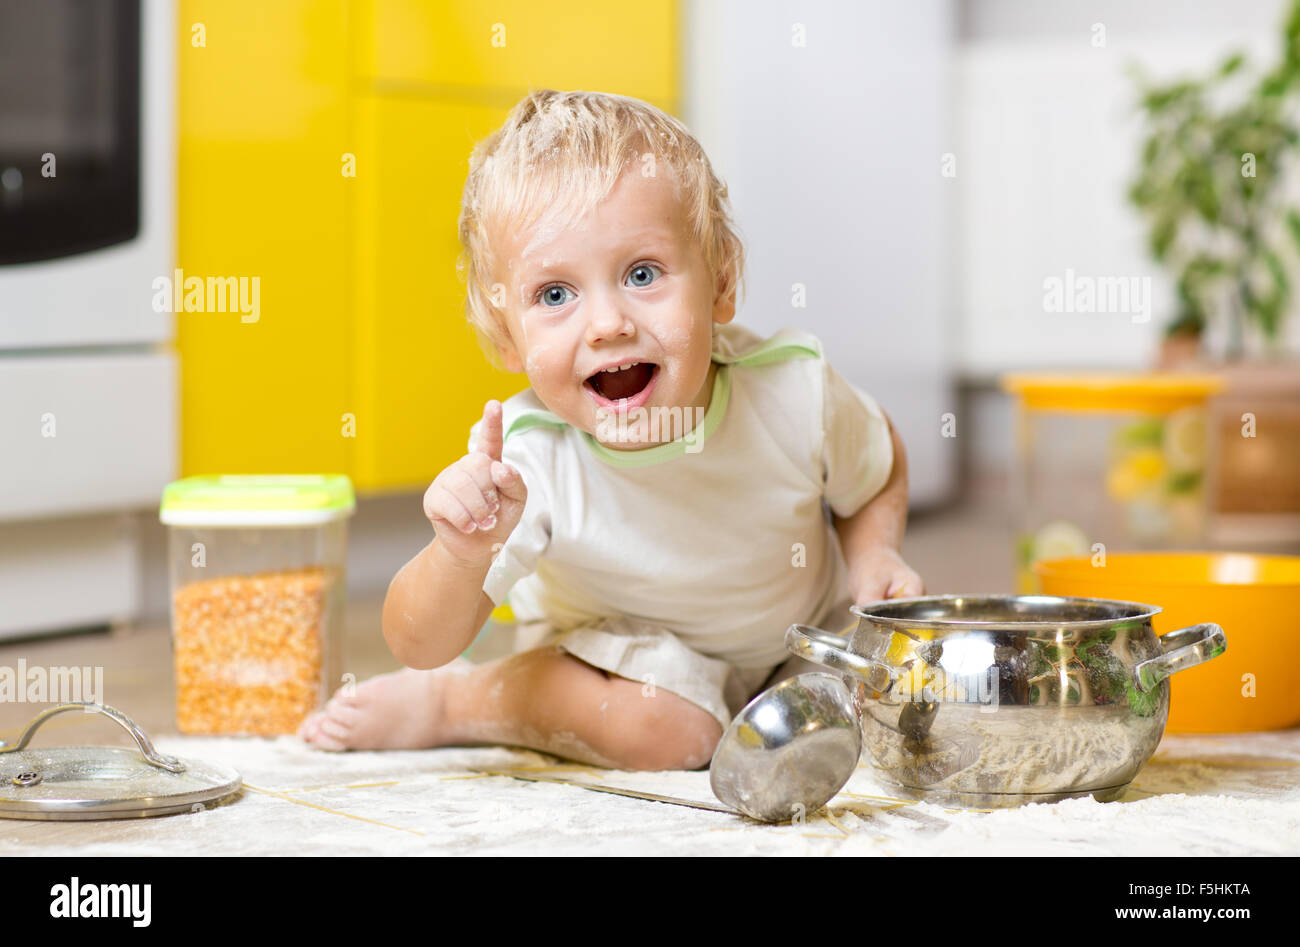 Spielendes Kind Junge mit Geschirr und Lebensmittel am Boden in Küche Stockfoto